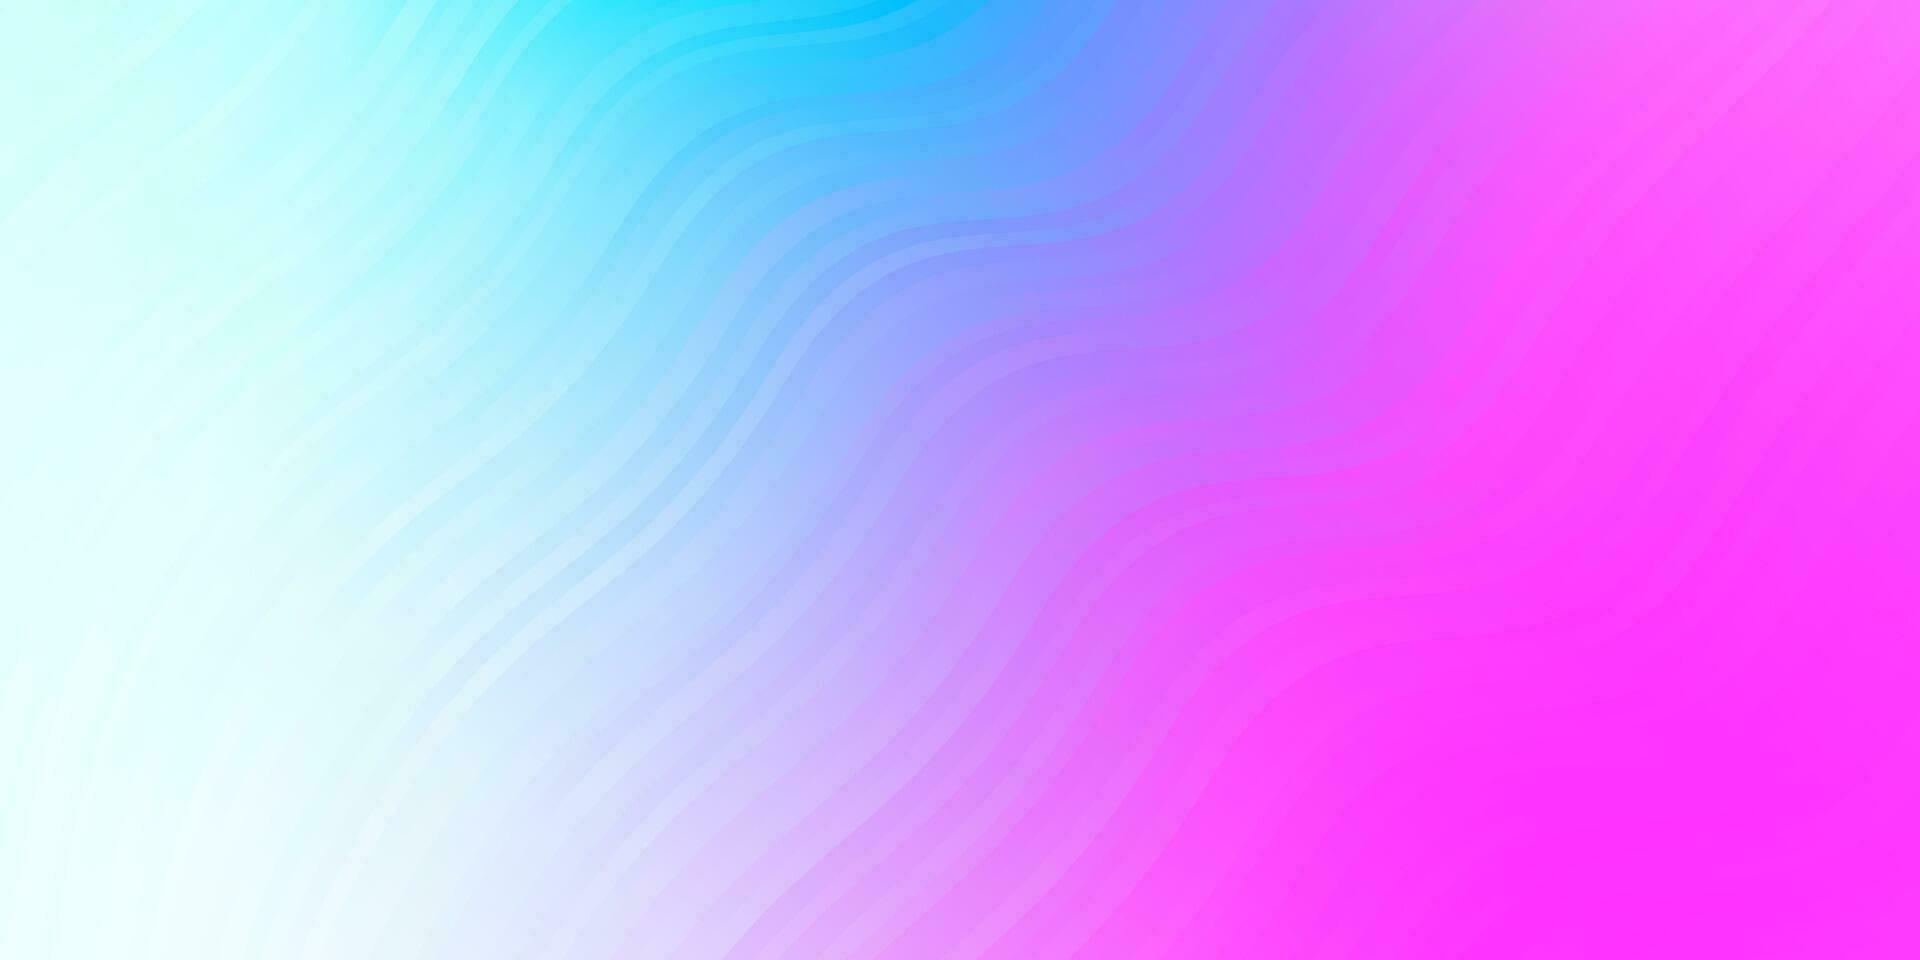 lichtroze, blauw vector sjabloon met curven.